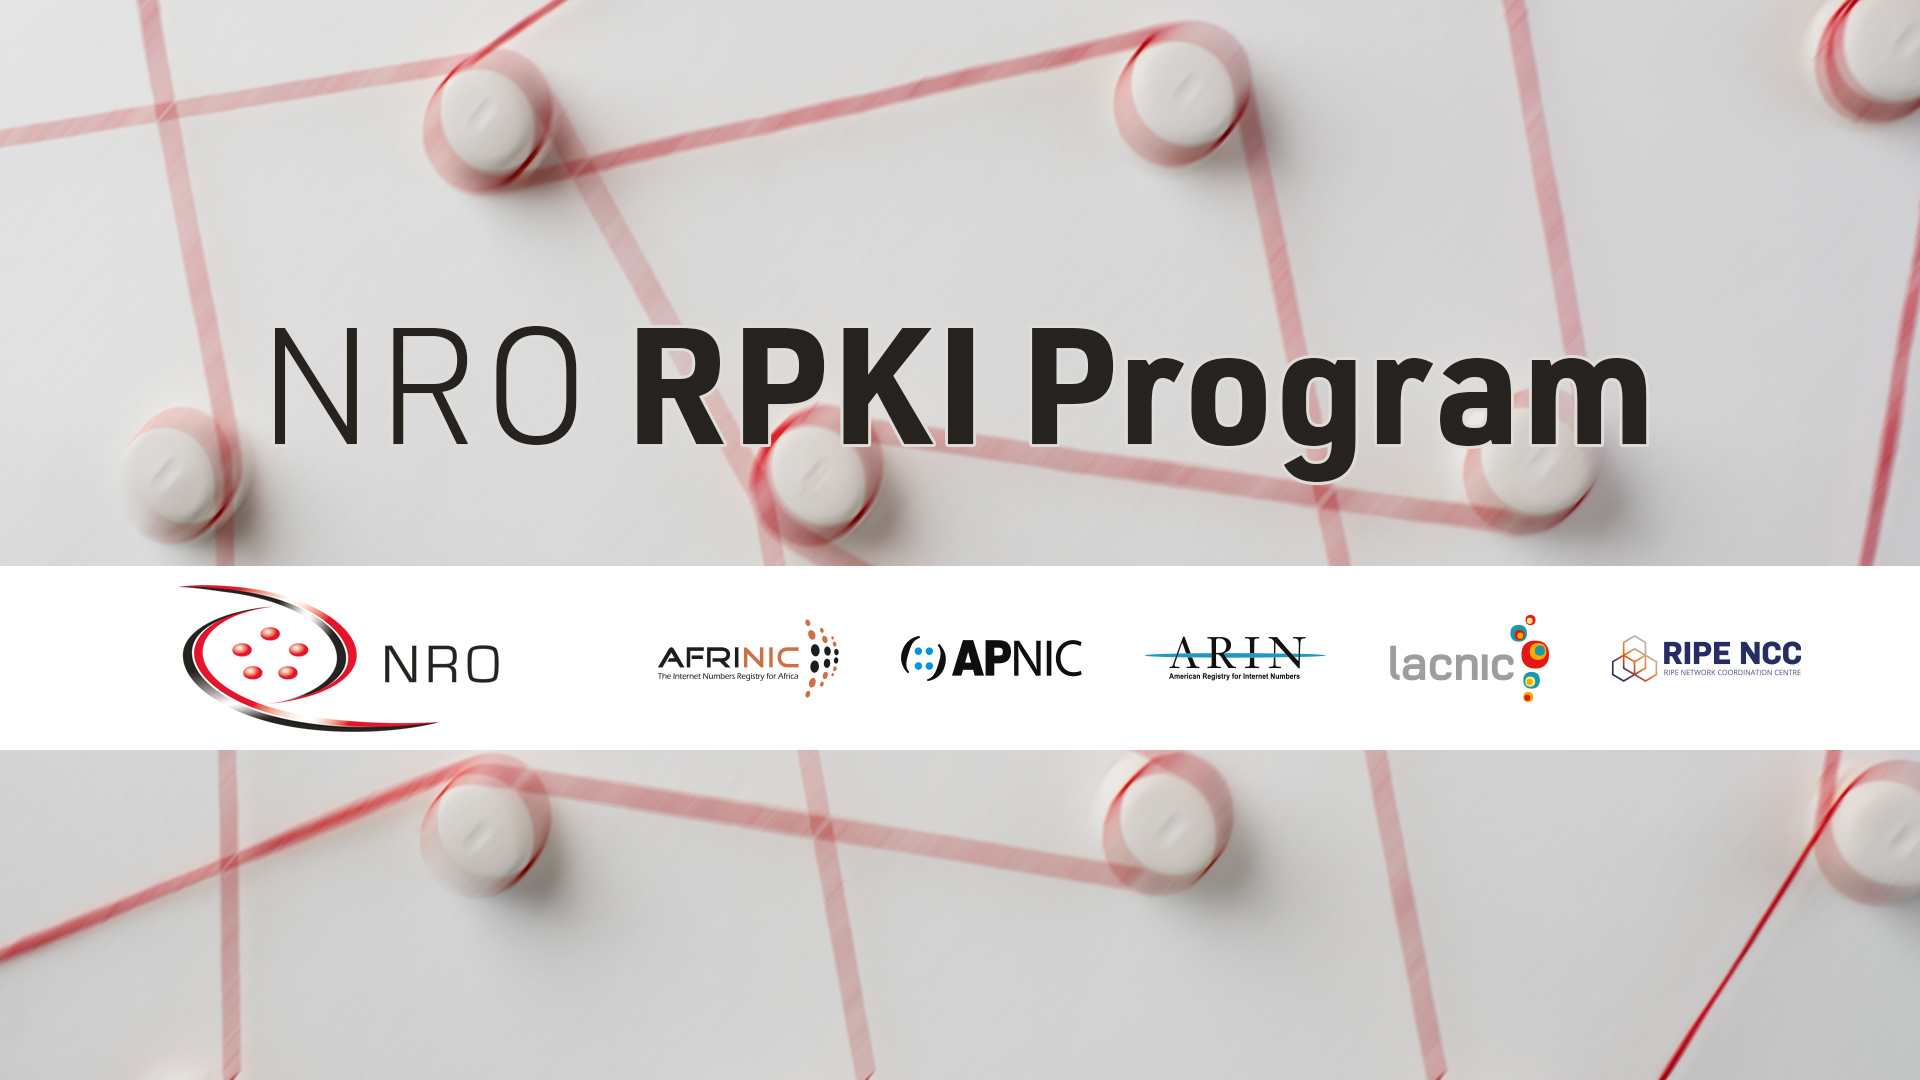 NRO RPKI Program Blog Series: Part 2